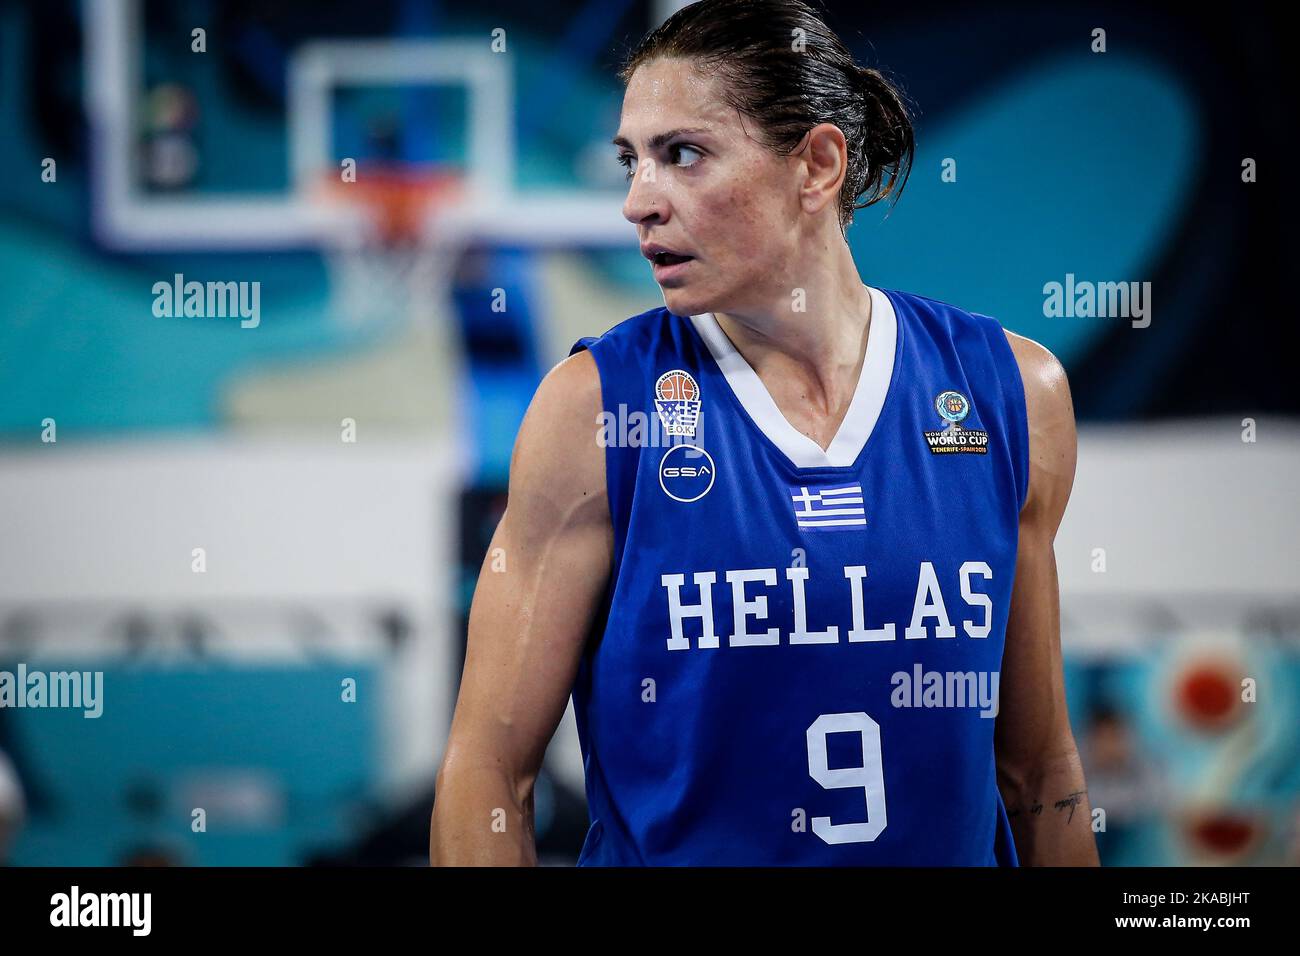 Espagne, Ténérife, 25 septembre 2018: Evanthia Maltsi, joueur de basket-ball féminin grec, lors de la coupe du monde de basket-ball féminin de la FIBA Banque D'Images